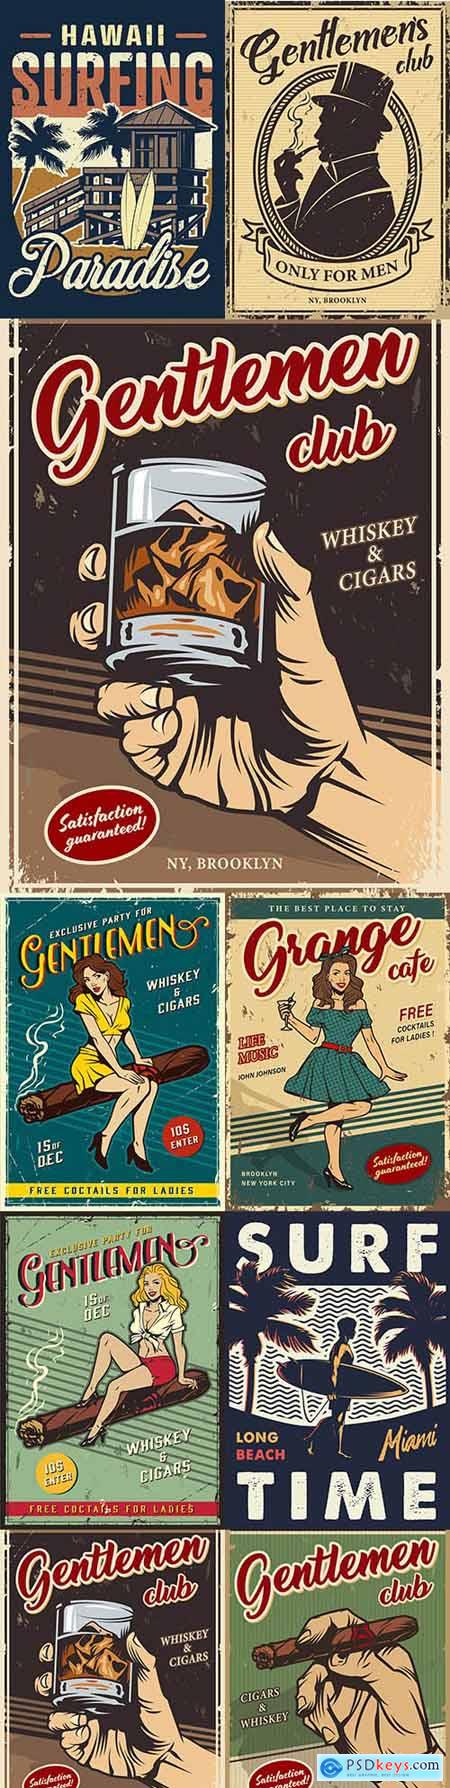 Vintage gentleman club advertising template